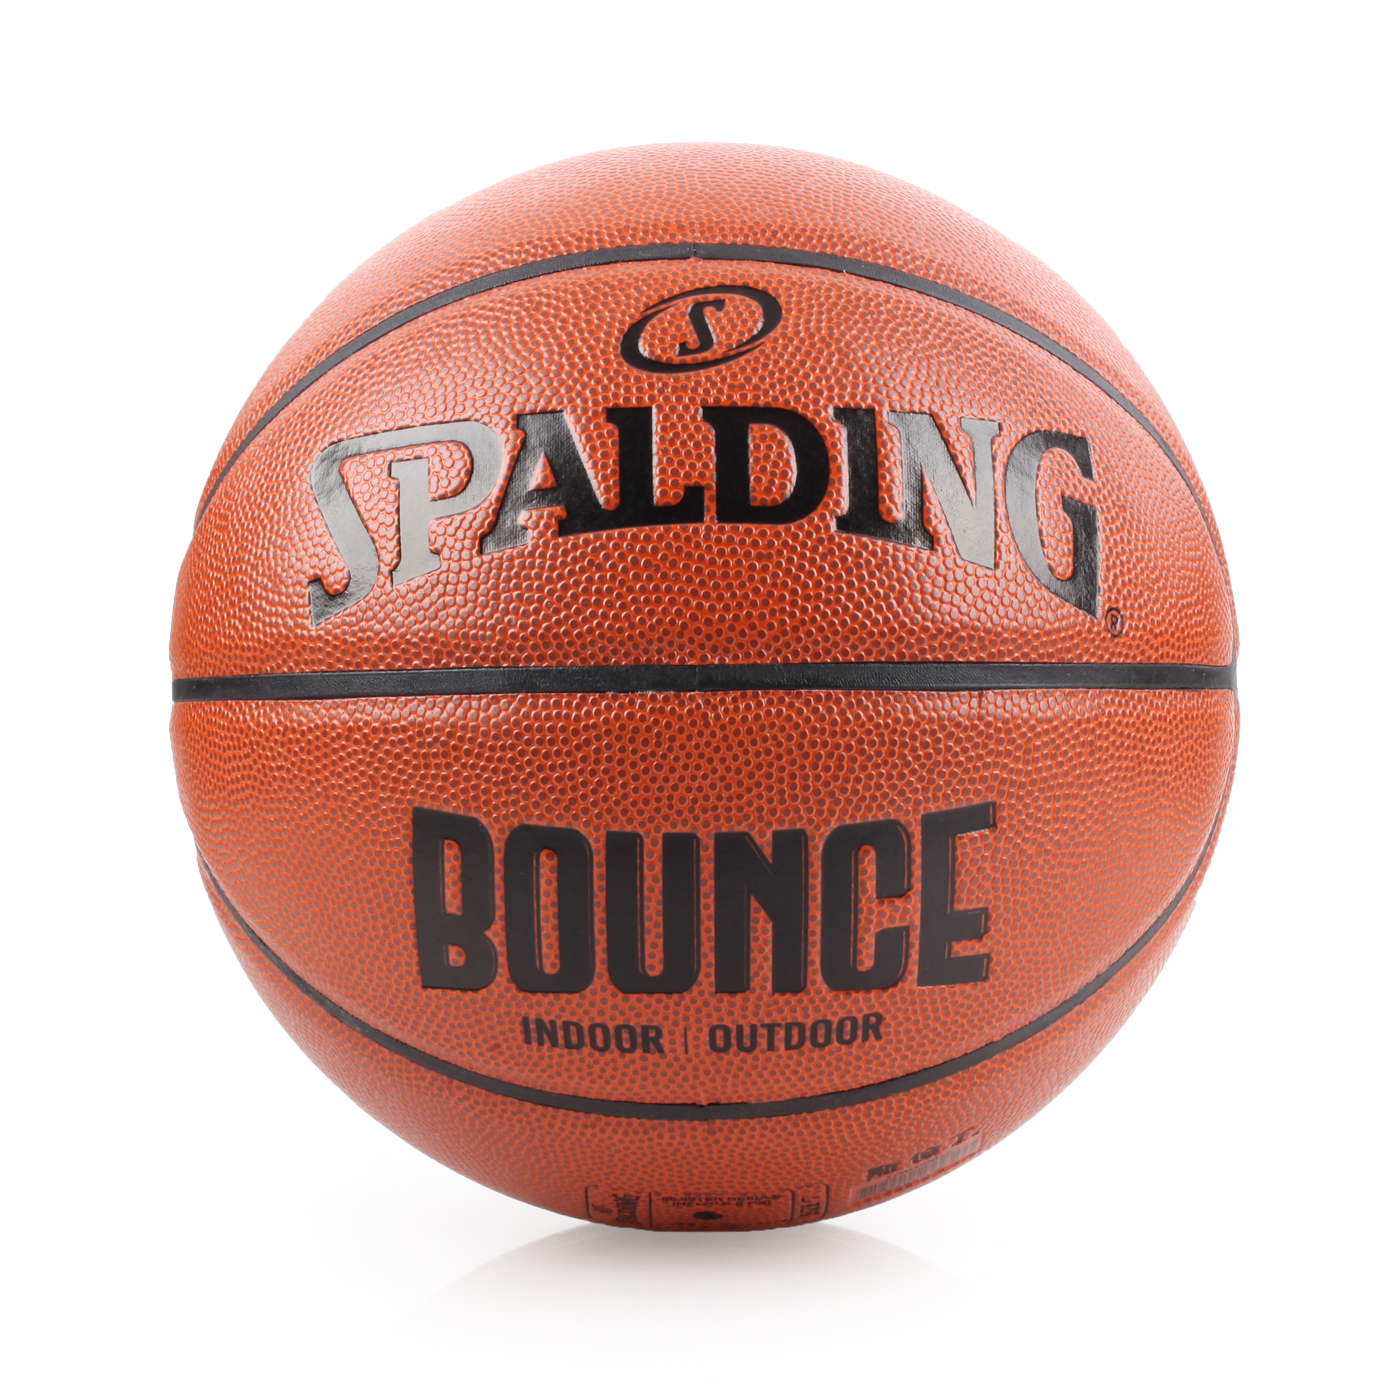 SPALDING Bounce 籃球-PU SPB91001 - 咖啡黑